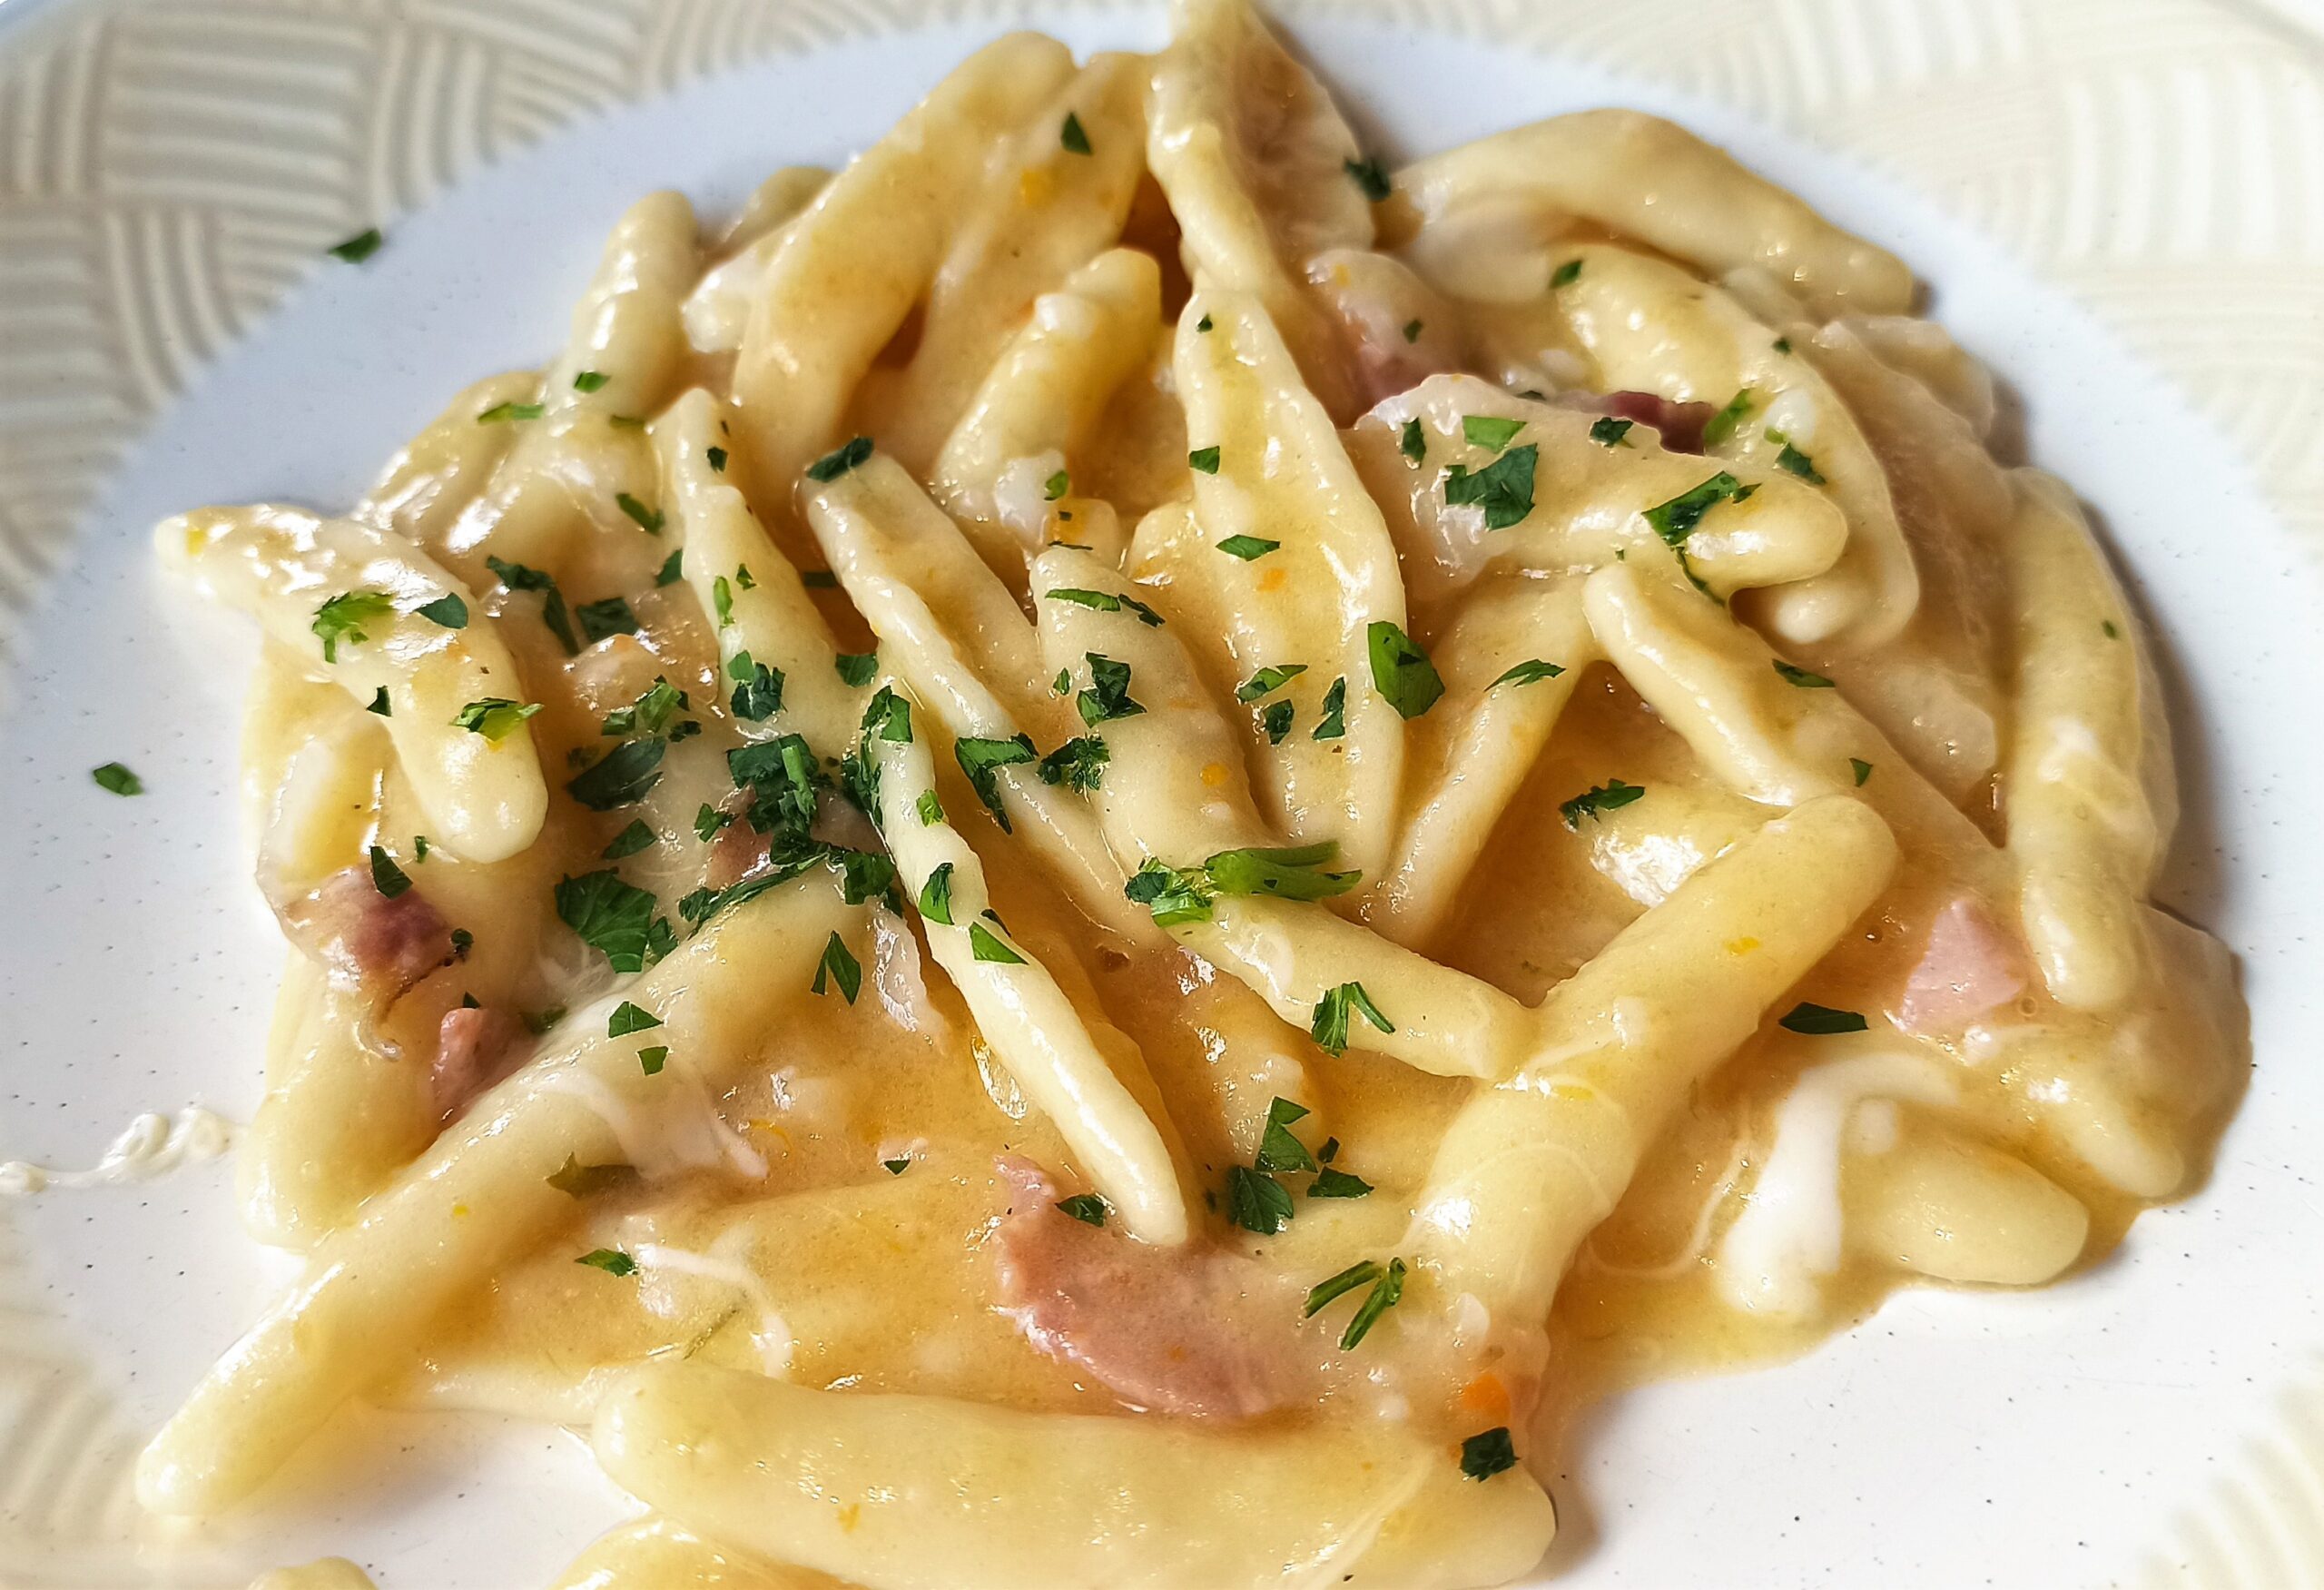 pasta-e-patate-alla-vesuviana,-piu-cremosi-dei-classici-con-la-ricetta-tradizionale-napoletana.-pronti-subito-per-un-pranzo-veloce-e-goloso